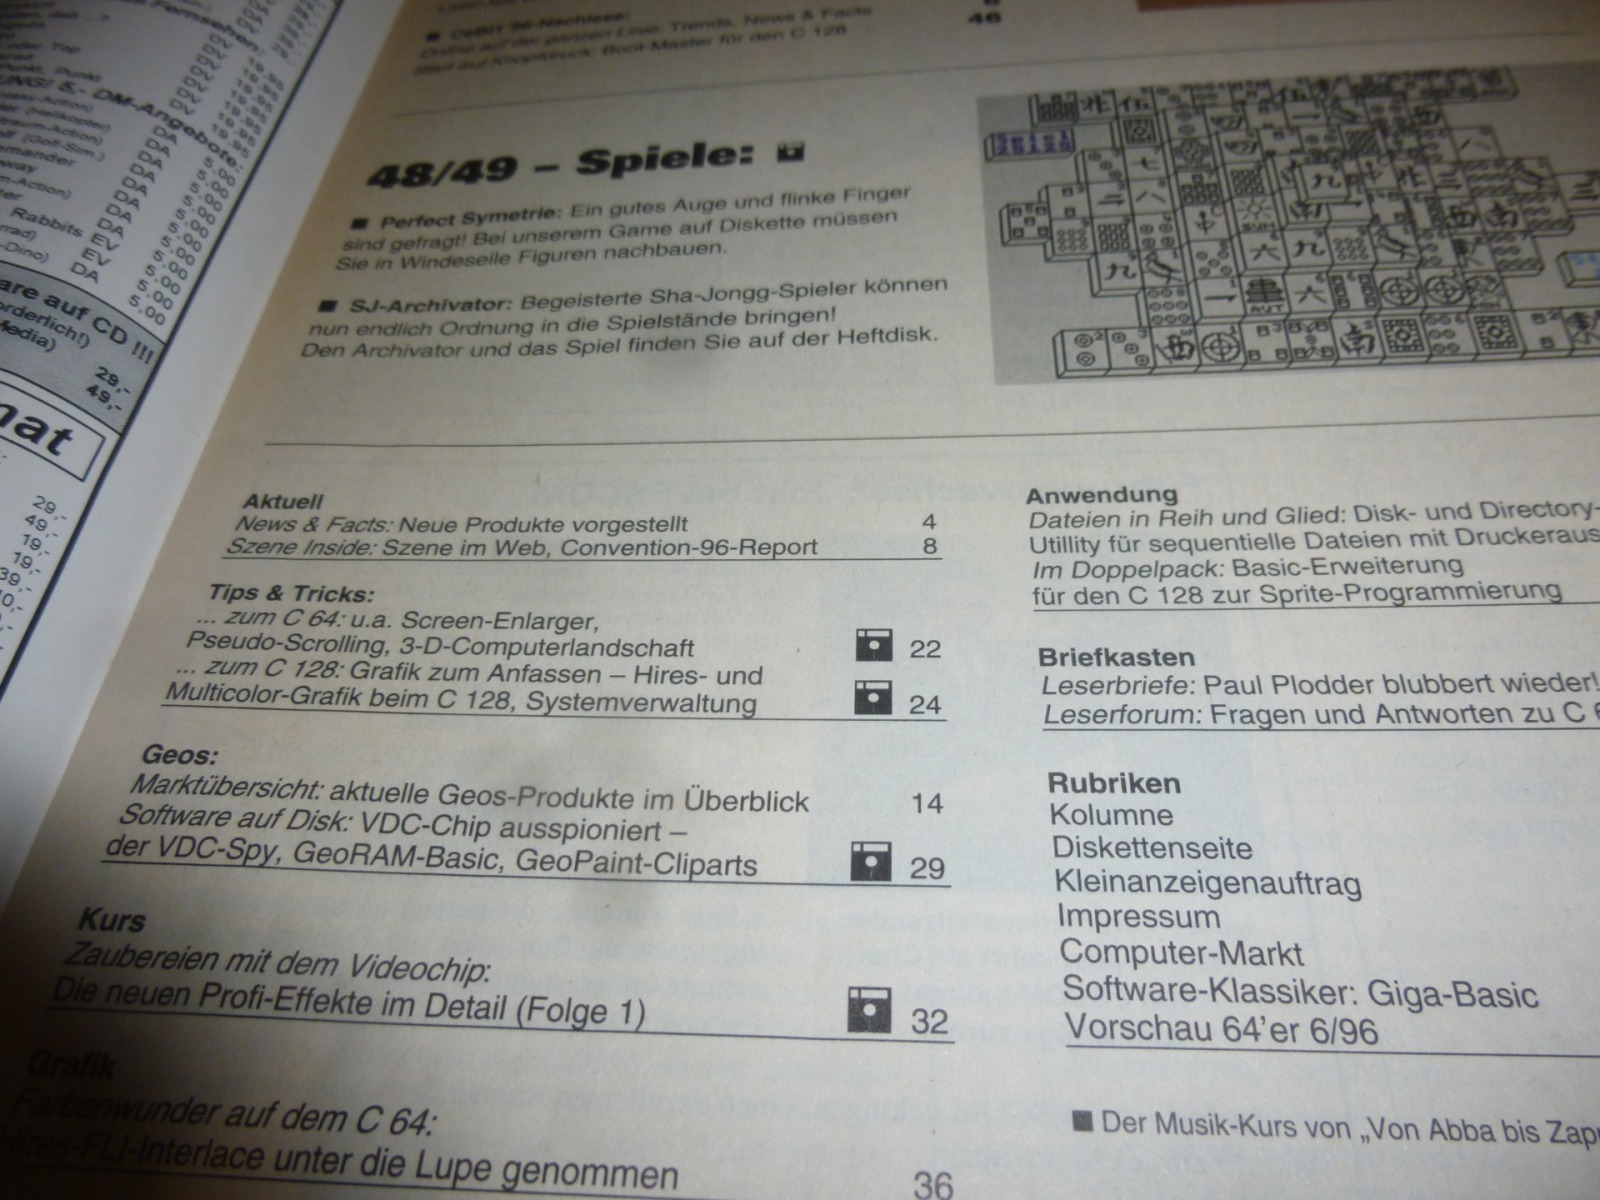 64er Magazin Ausgabe 5/96 1996 3